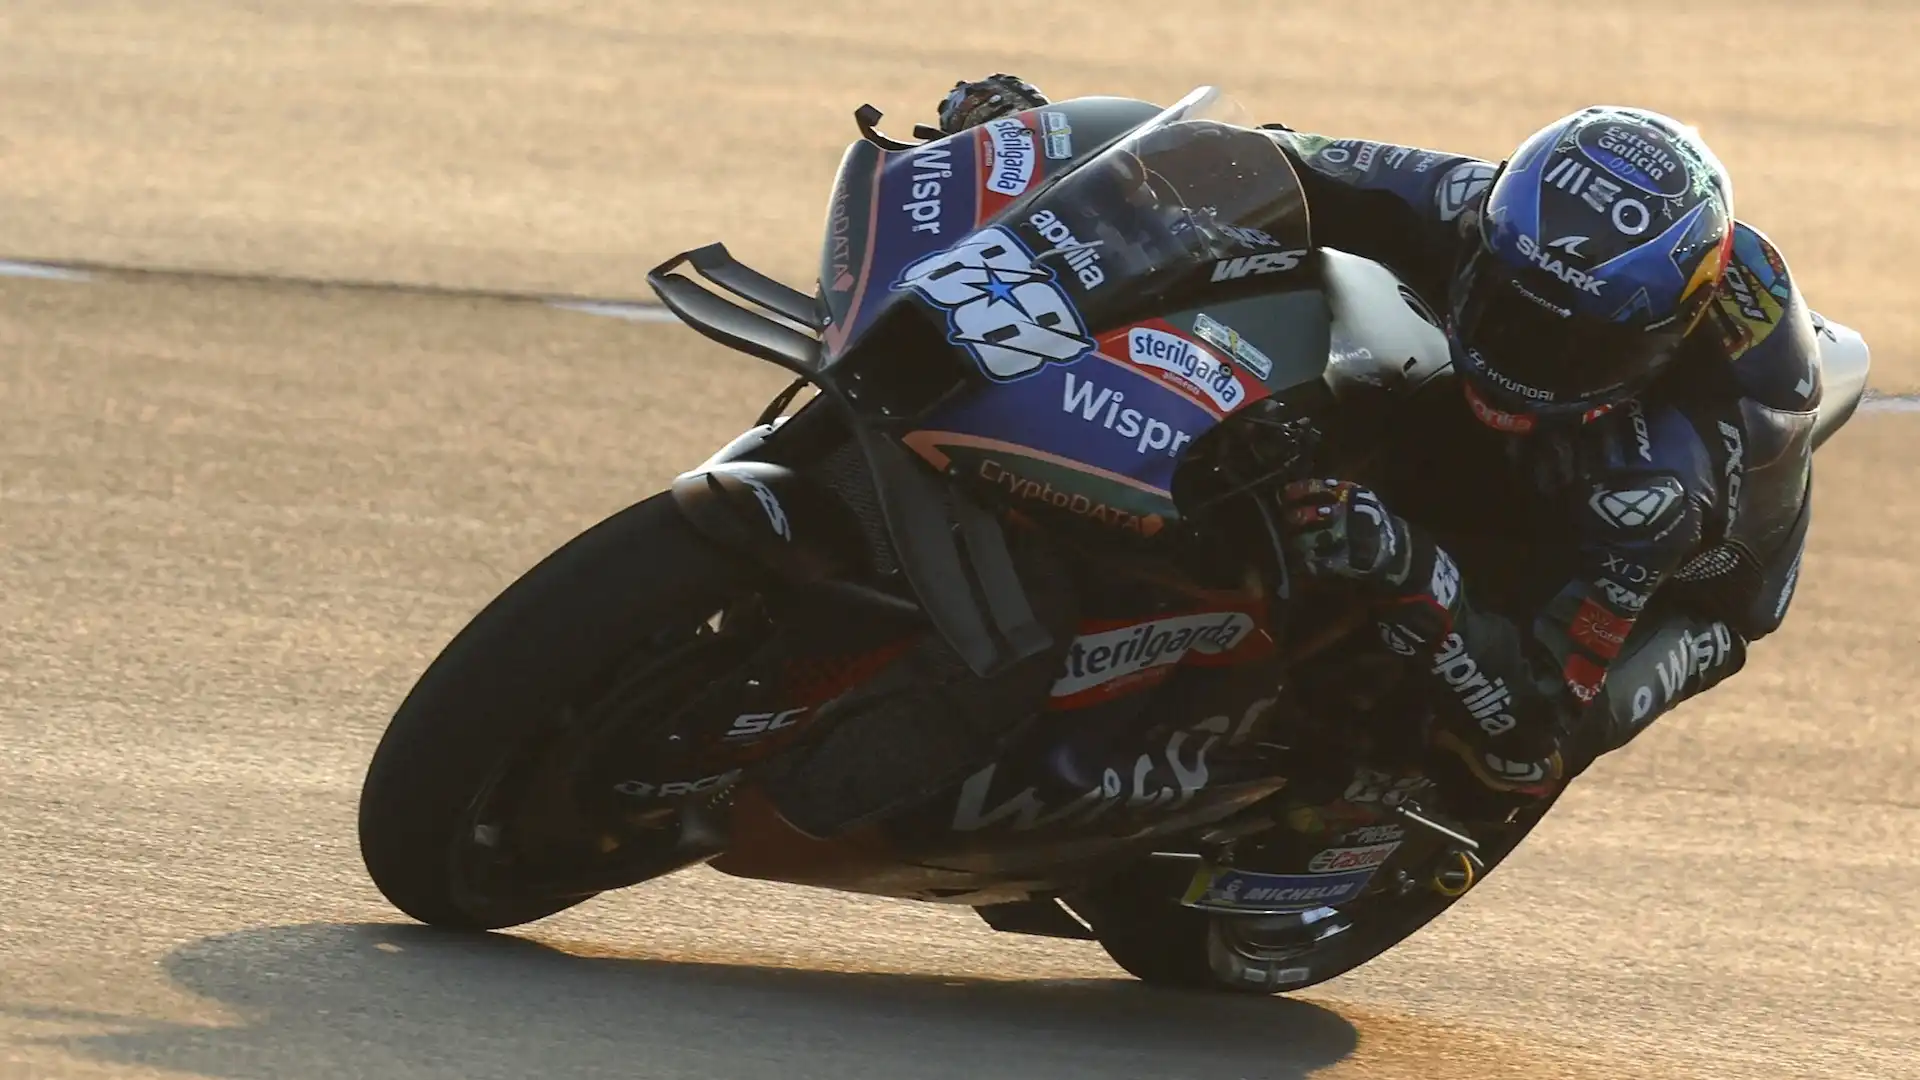 Sprint Qatar MotoGP, fratture per Aleix Espargaró e Miguel Oliveira